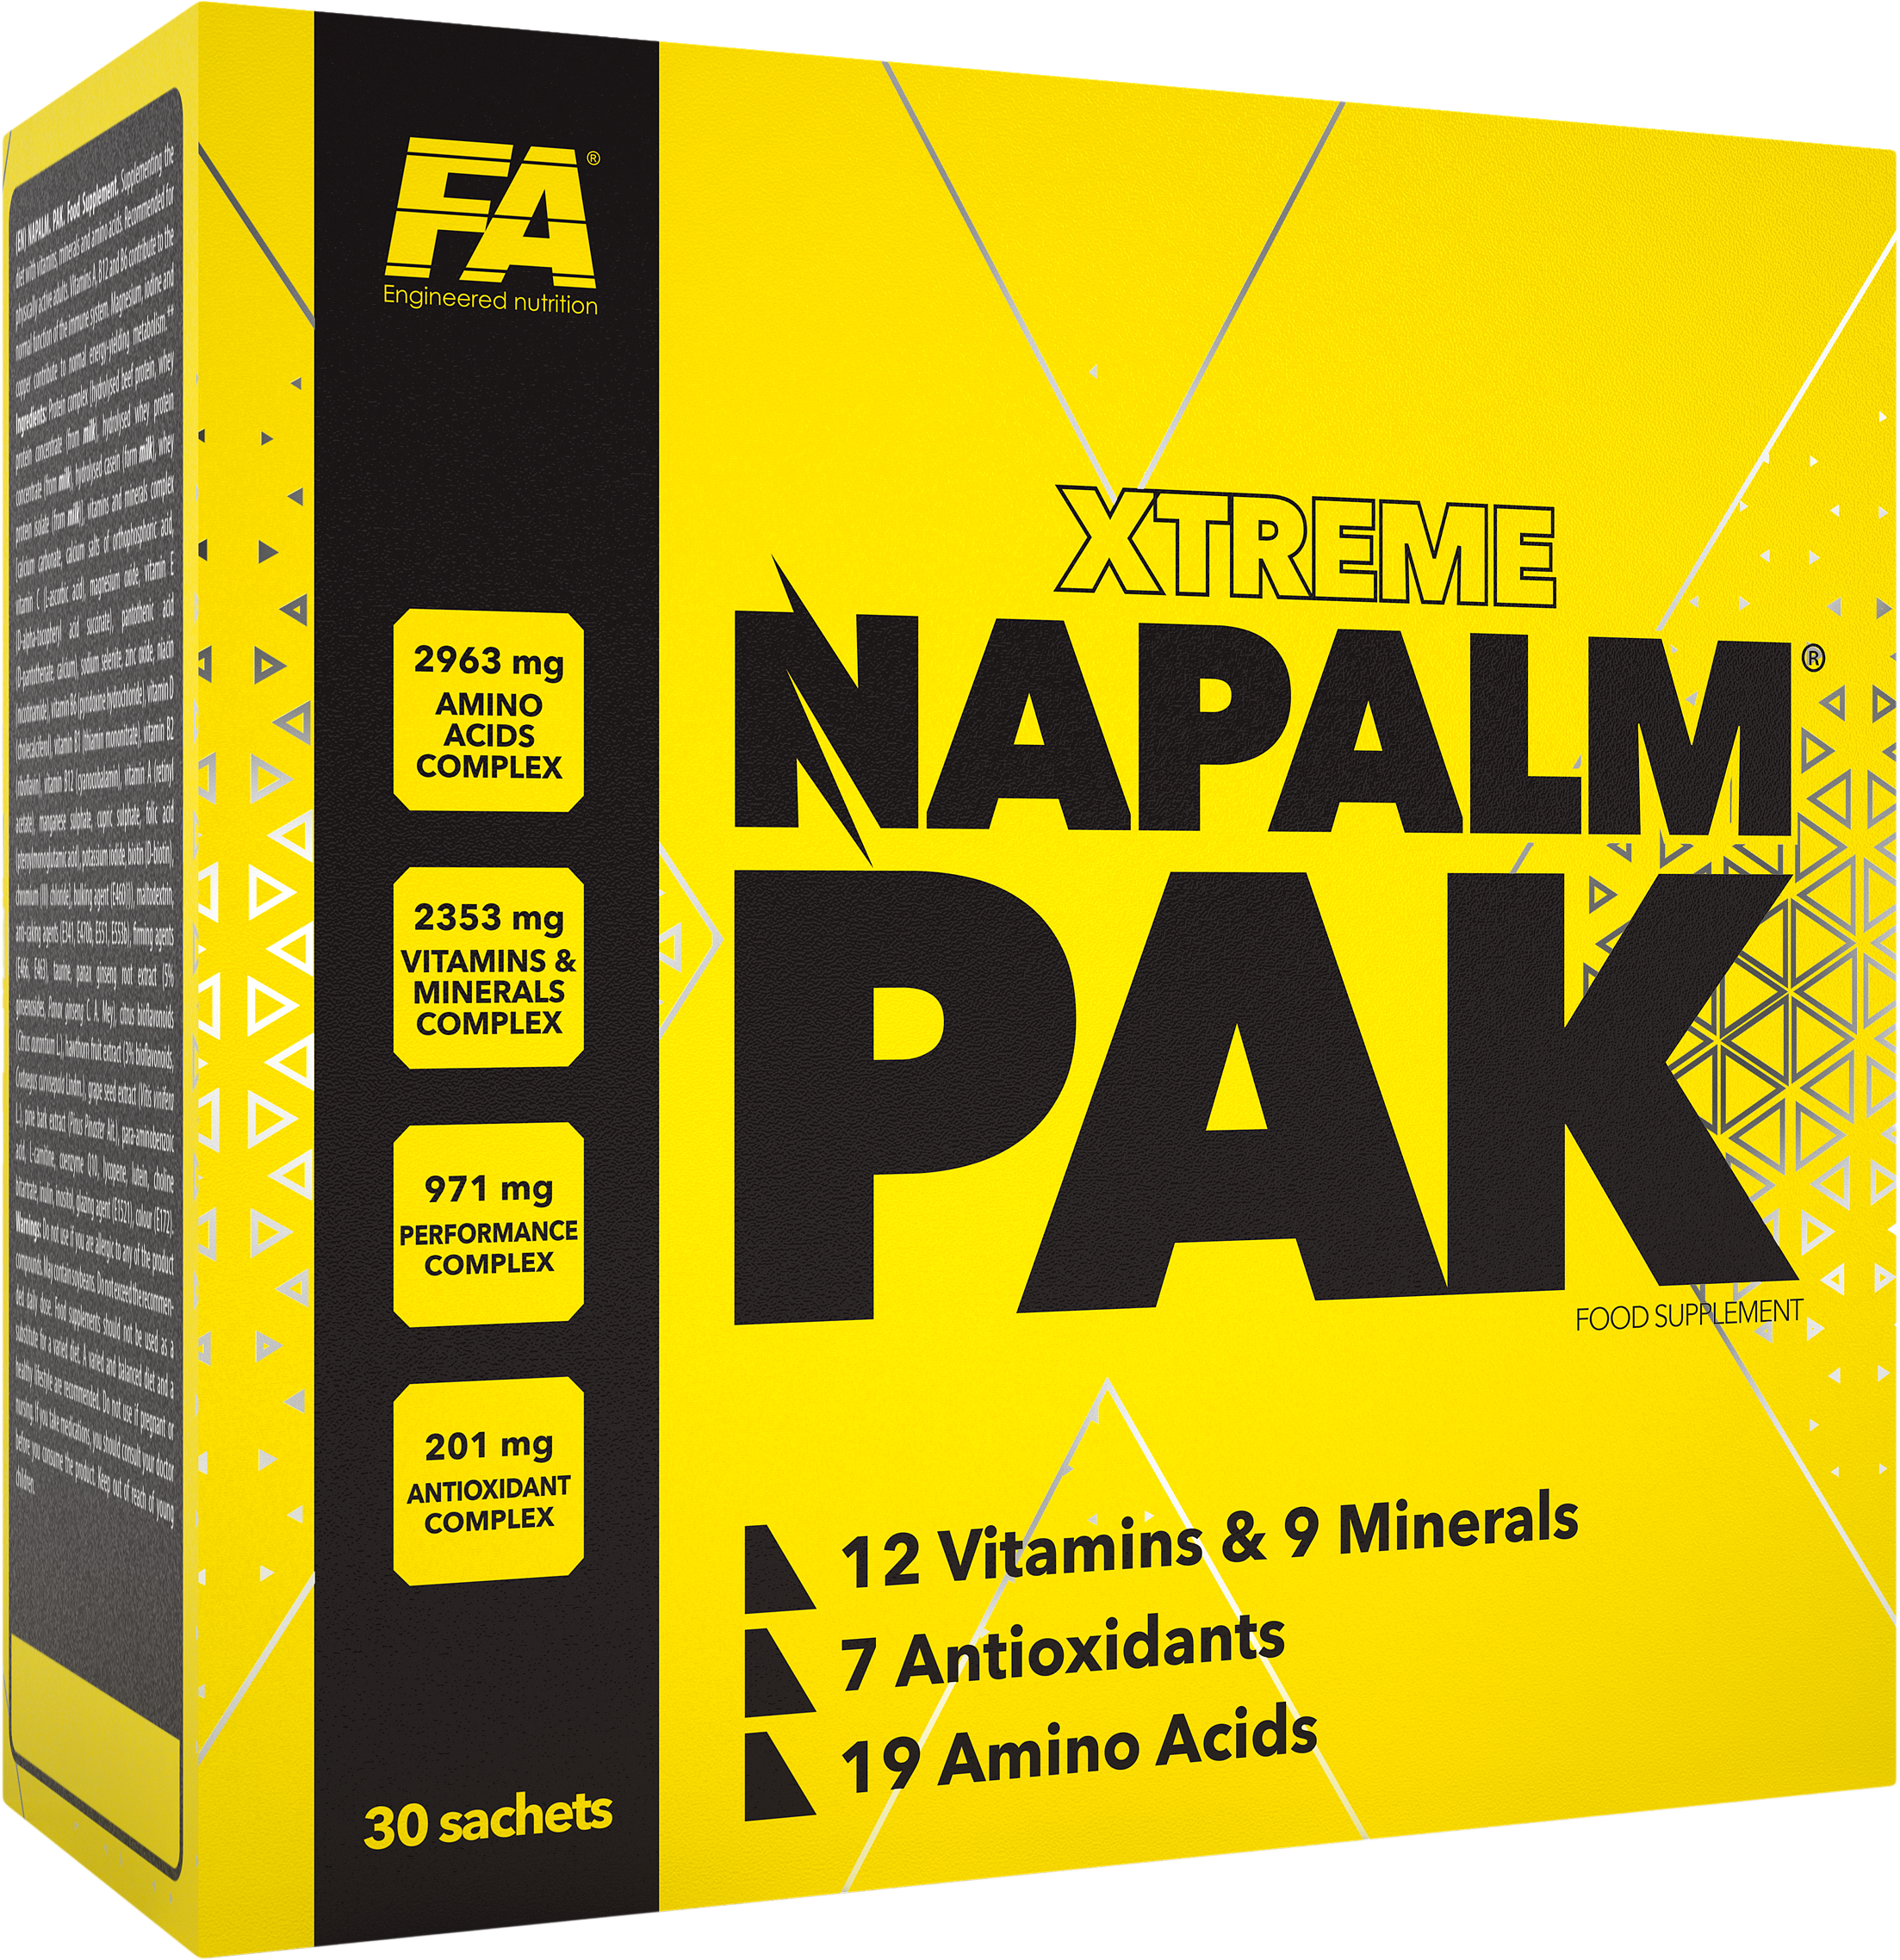 Xtreme Napalm Pak | Complete Vitamins, Minerals and Antioxidant Formula - BadiZdrav.BG